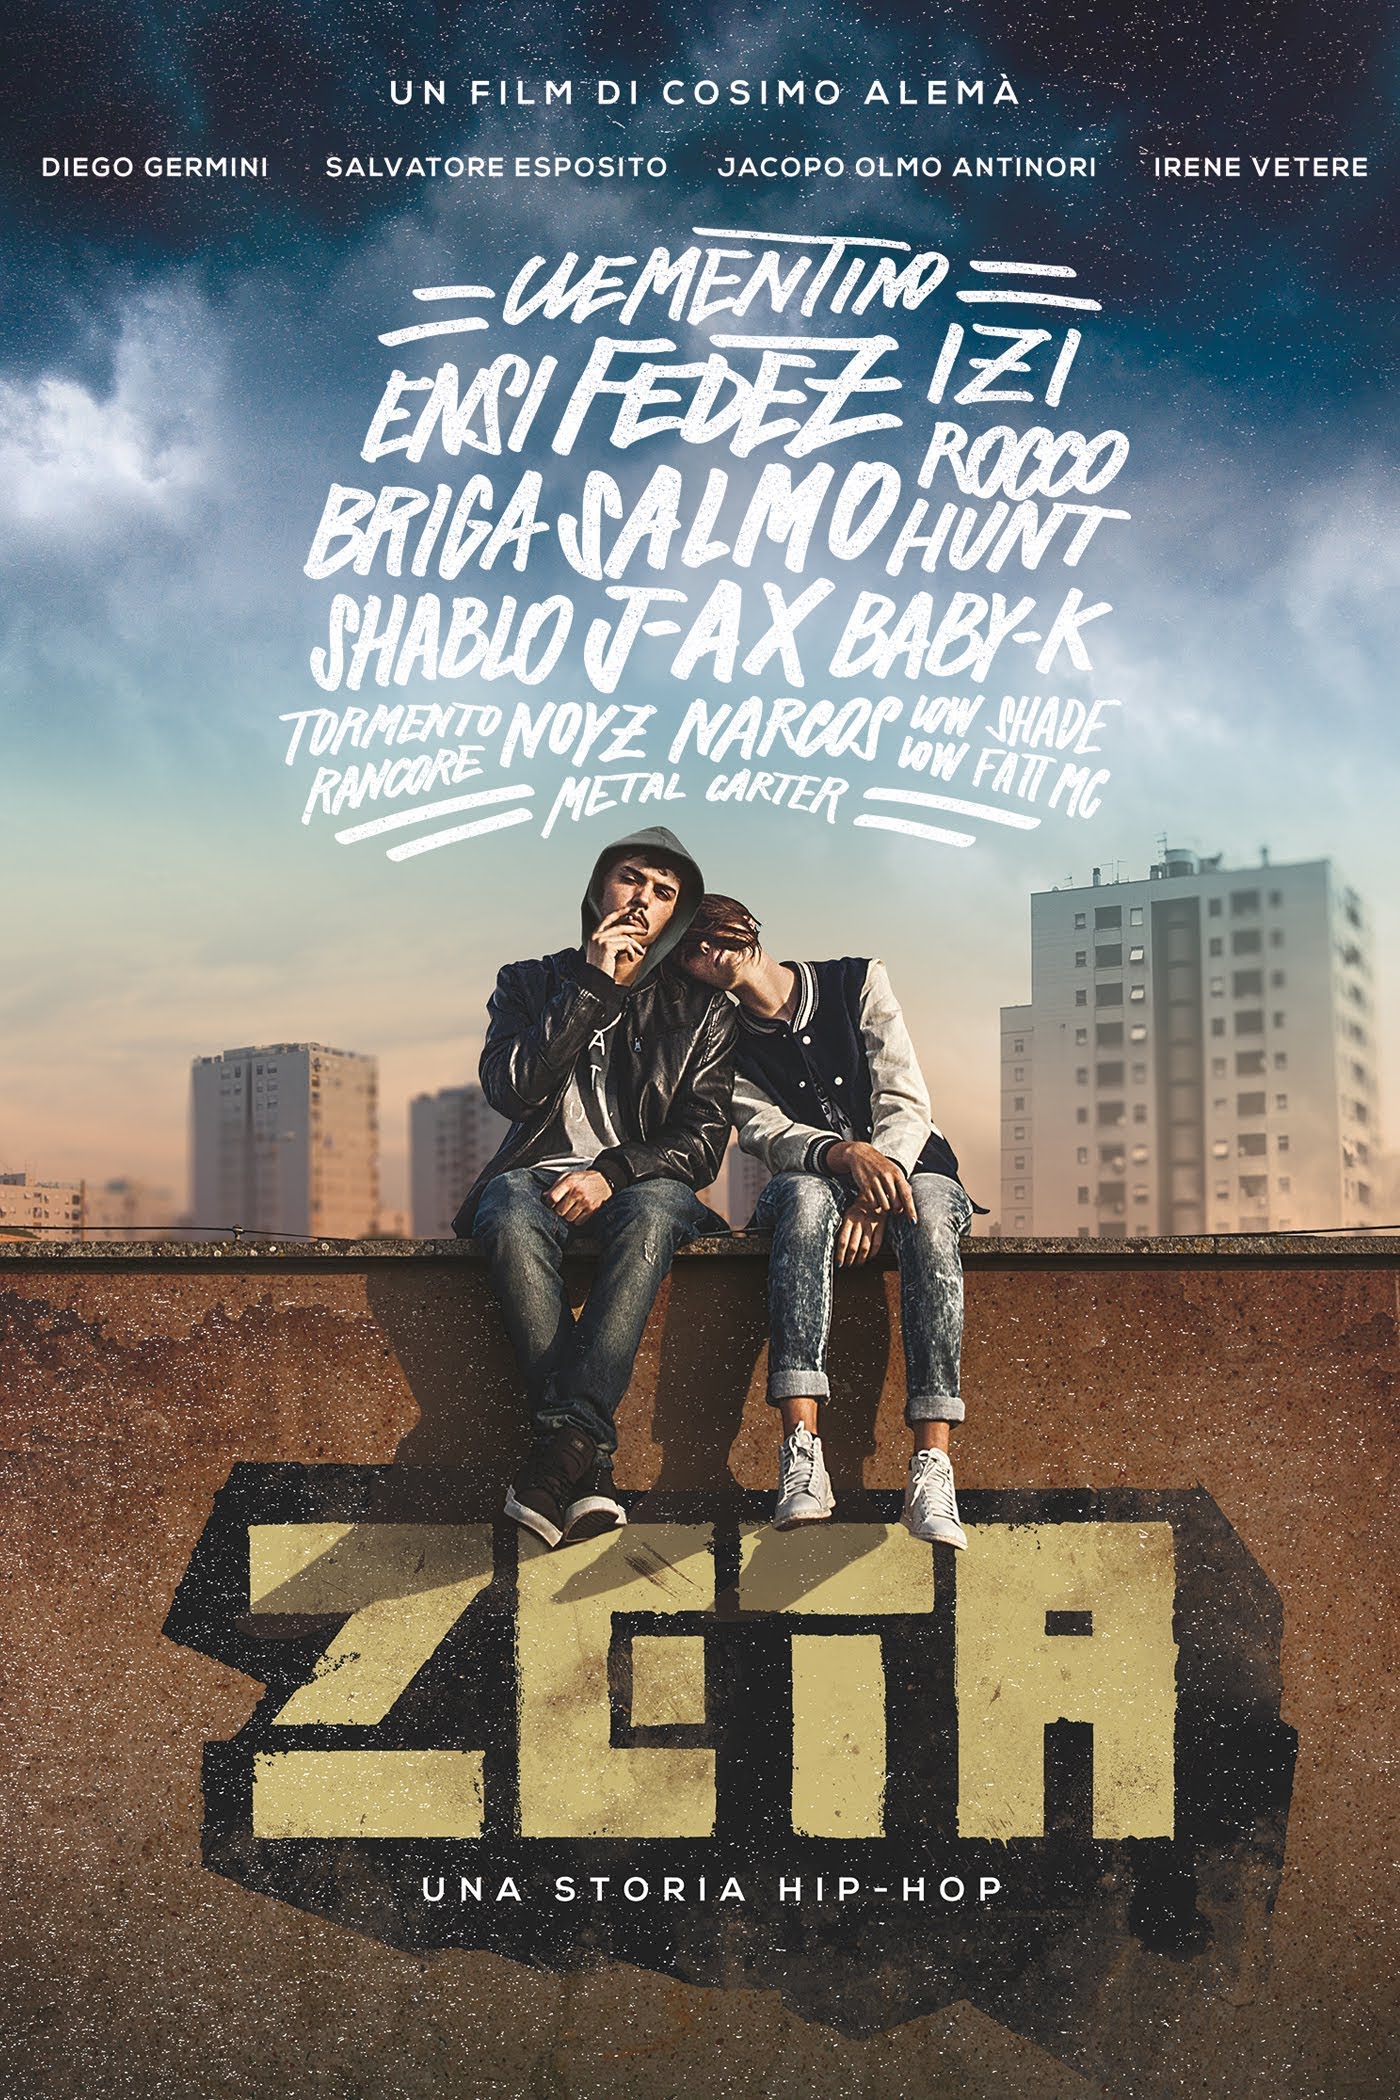 Zeta – Una storia Hip Hop [HD] (2016)